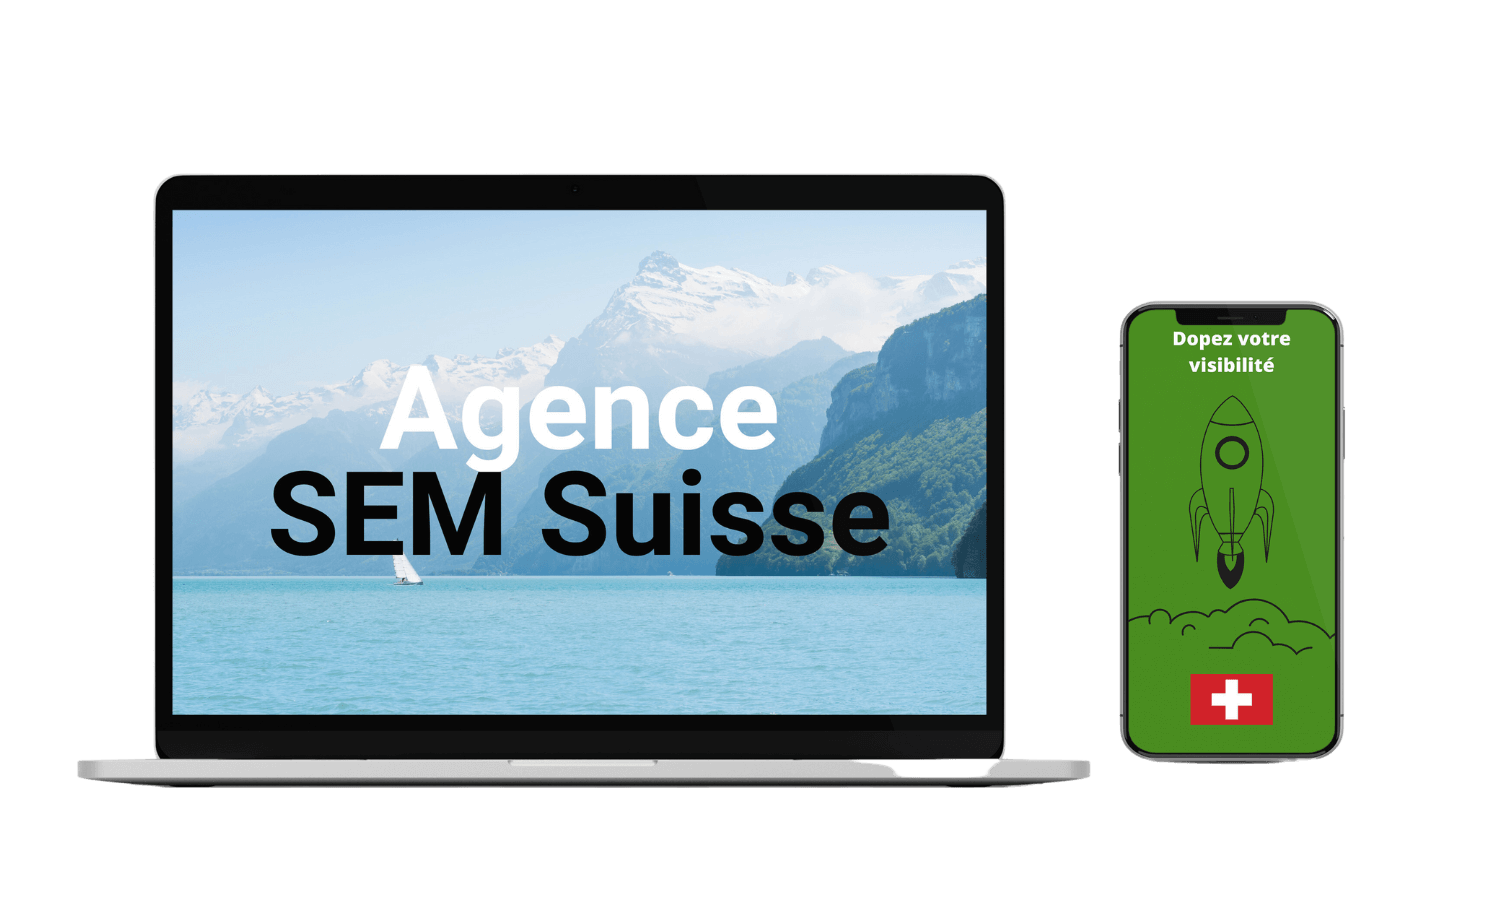 Agence SEM Suisse background